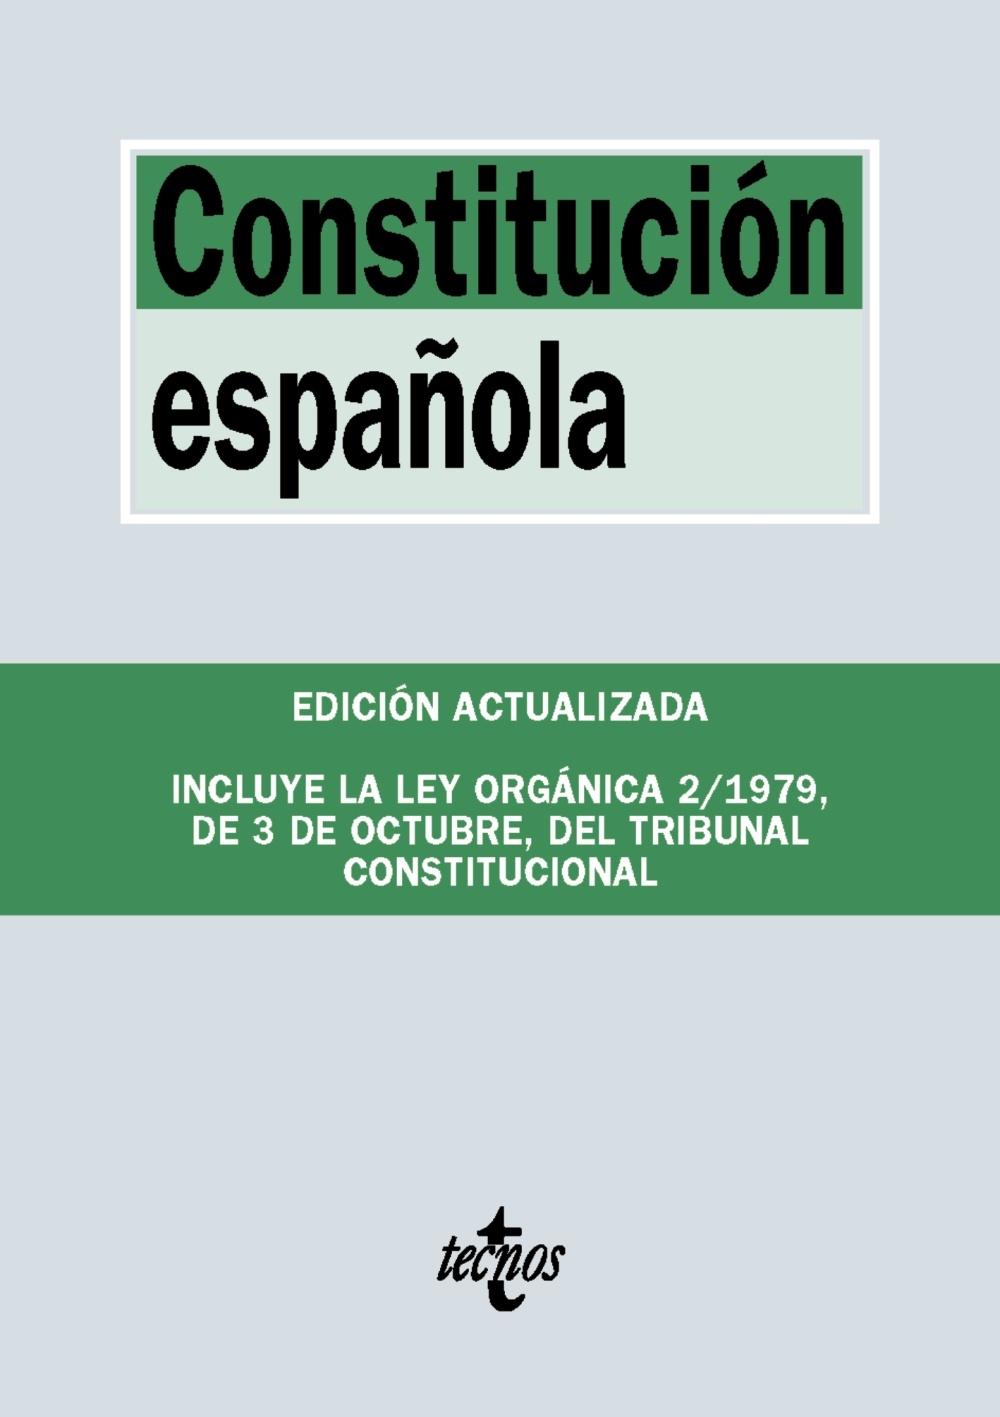 CONSTITUCIÓN ESPAÑOLA "INCLUYE LA LEY ORGÁNICA DEL TRIBUNAL CONSTITUCIONAL"